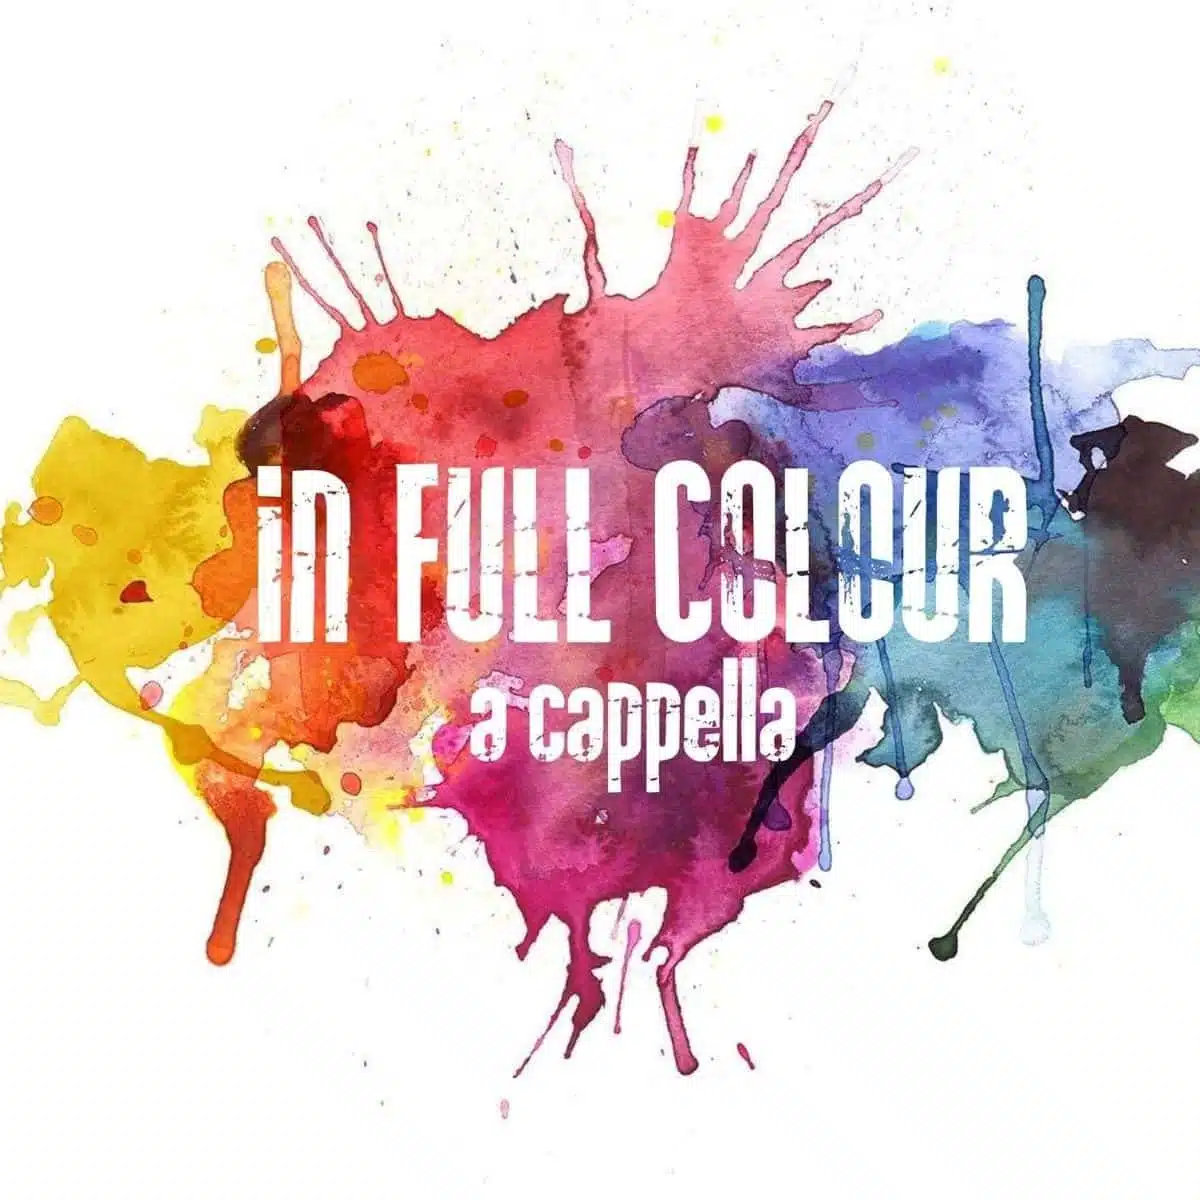 In Full Colour logo